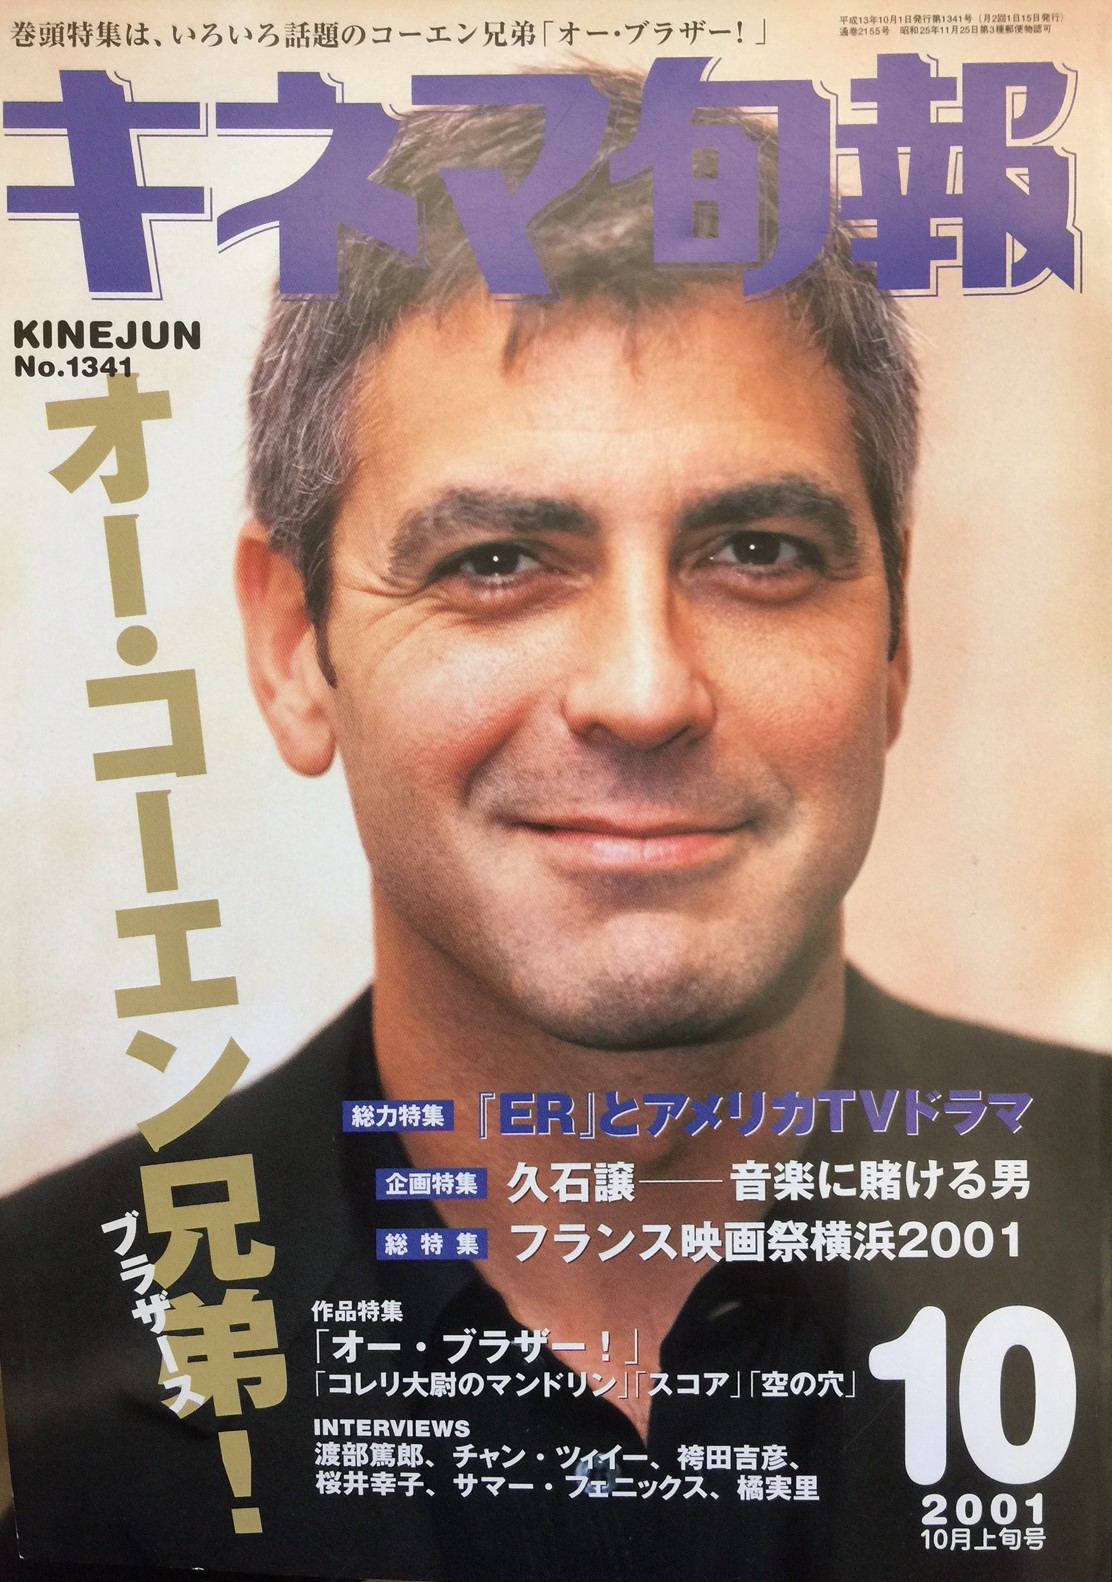 キネマ旬報 2001 10月上旬号